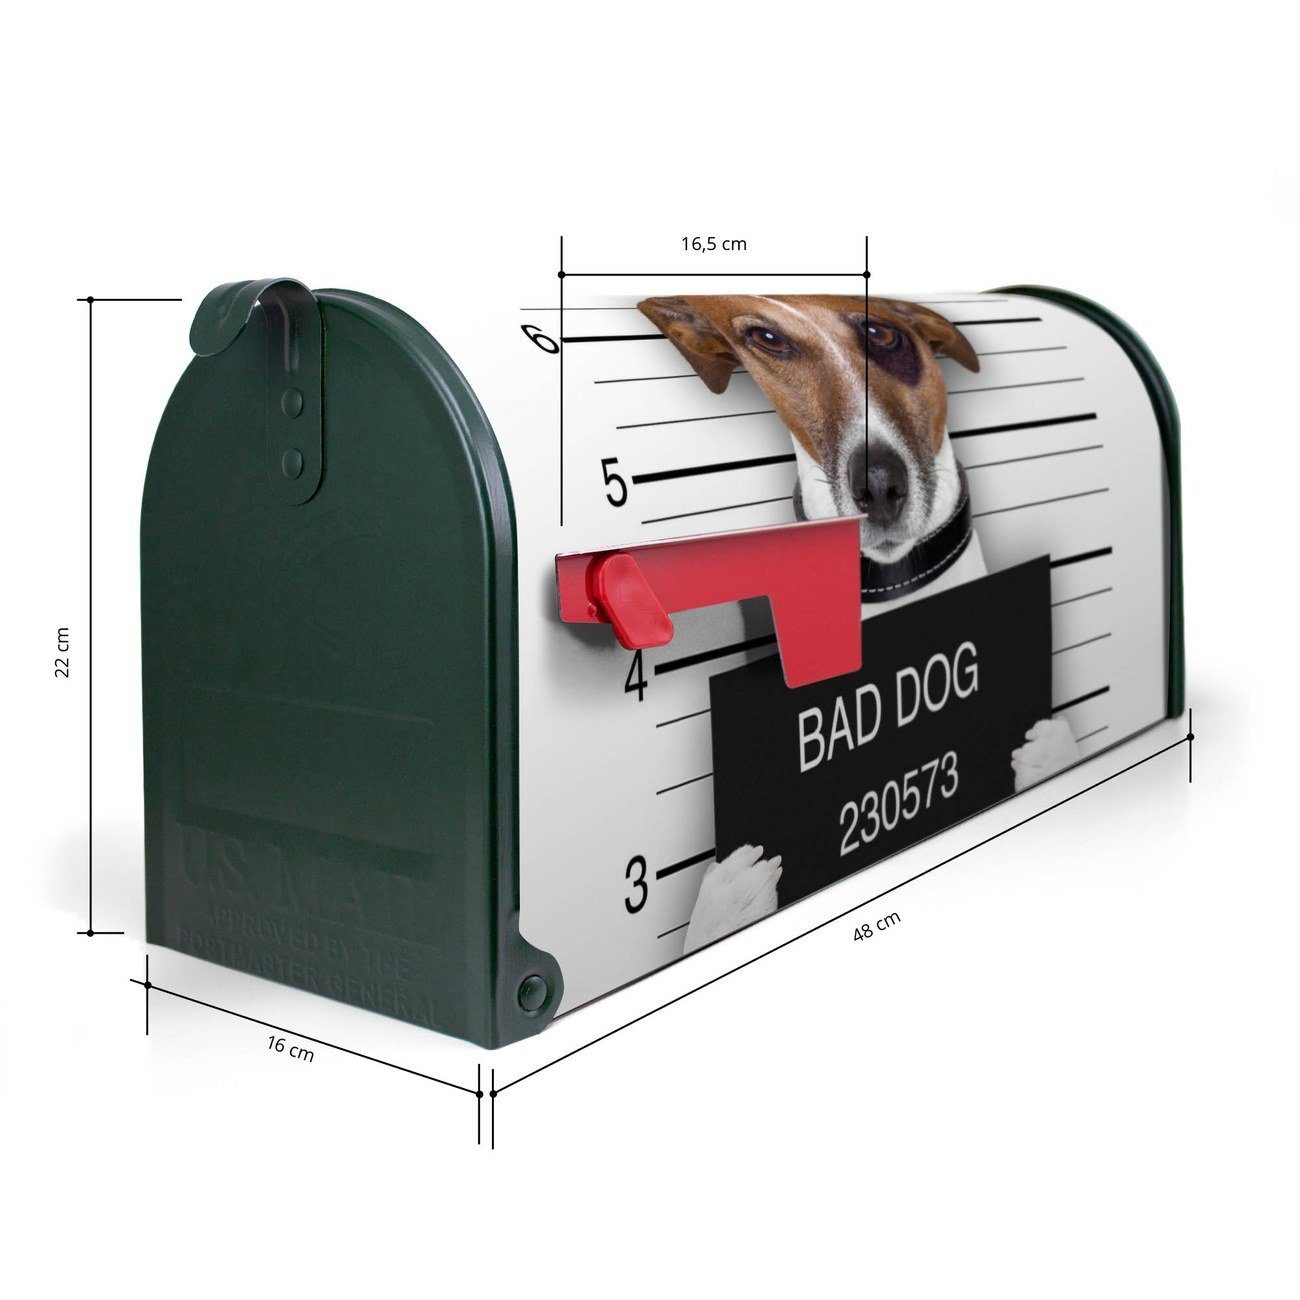 Mailbox original (Amerikanischer Amerikanischer x cm 51 17 Briefkasten, Mississippi x aus Bad Dog Russel 22 grün banjado Briefkasten USA), Jack